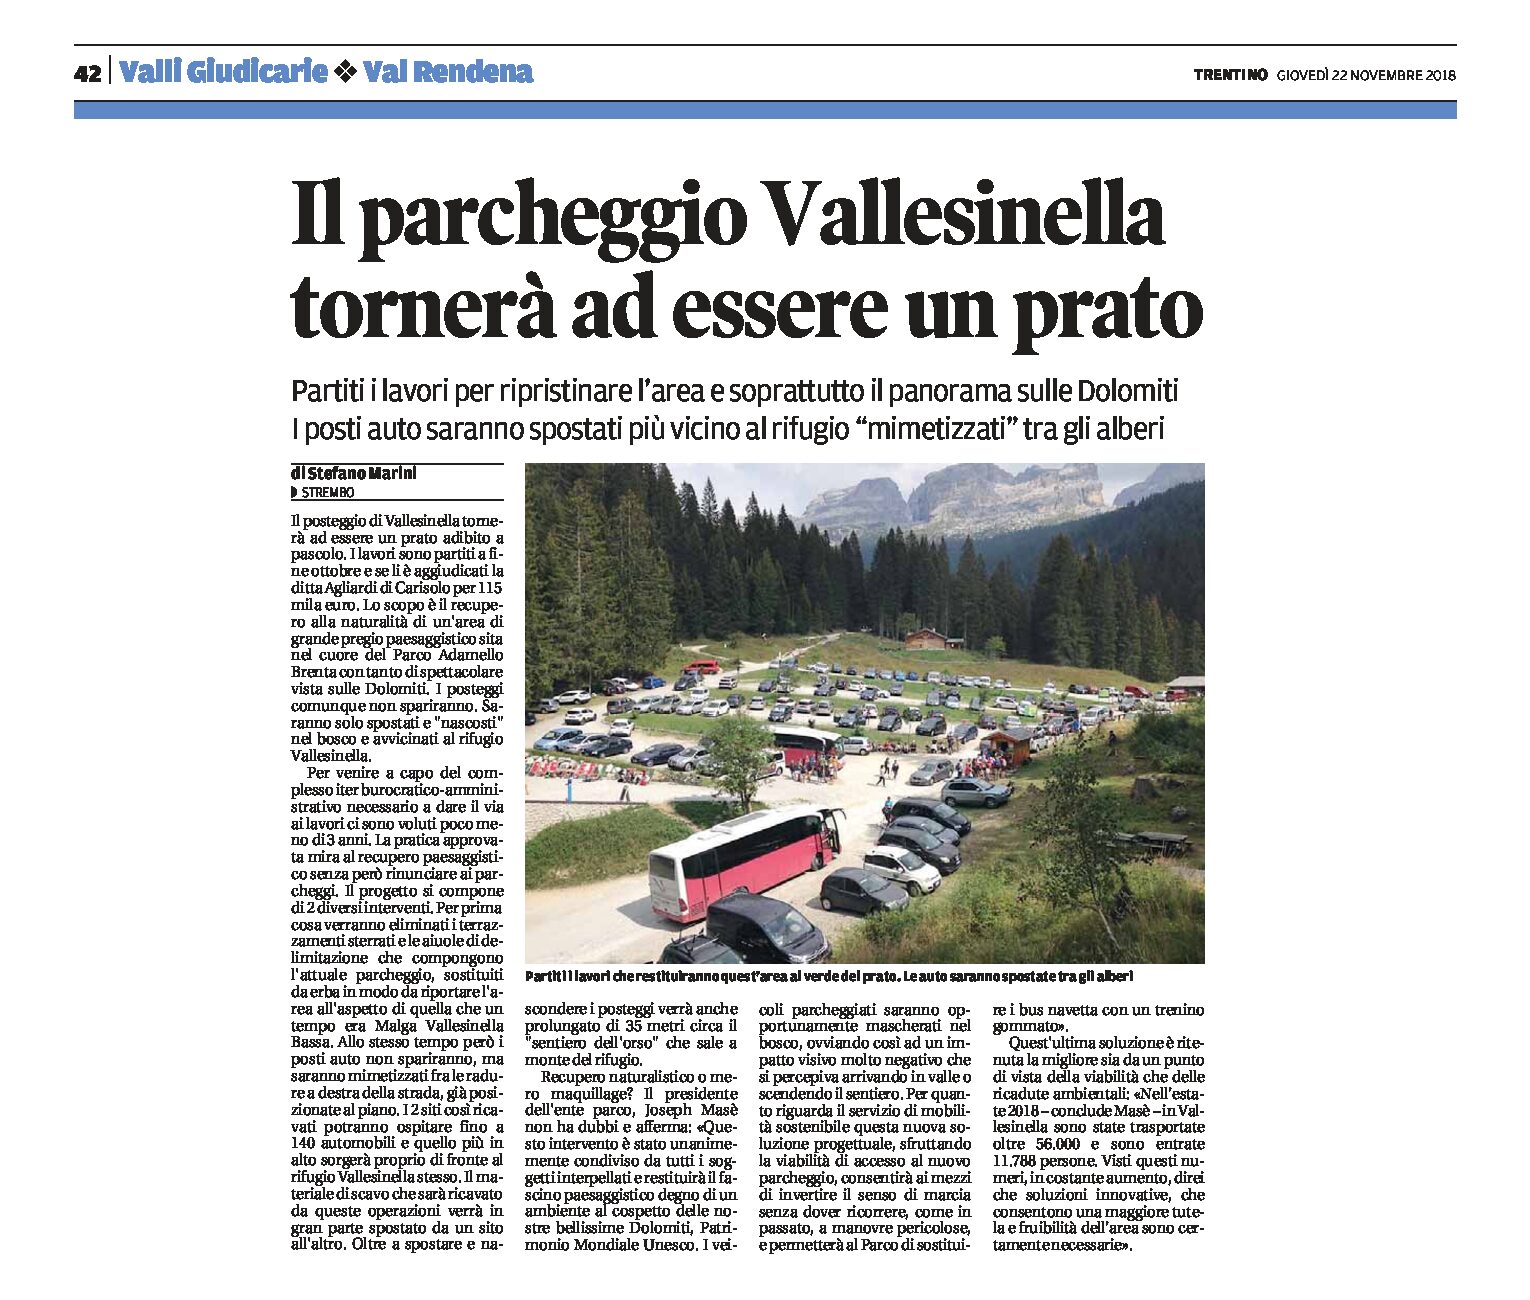 Vallesinella: il parcheggio tornerà a essere un prato